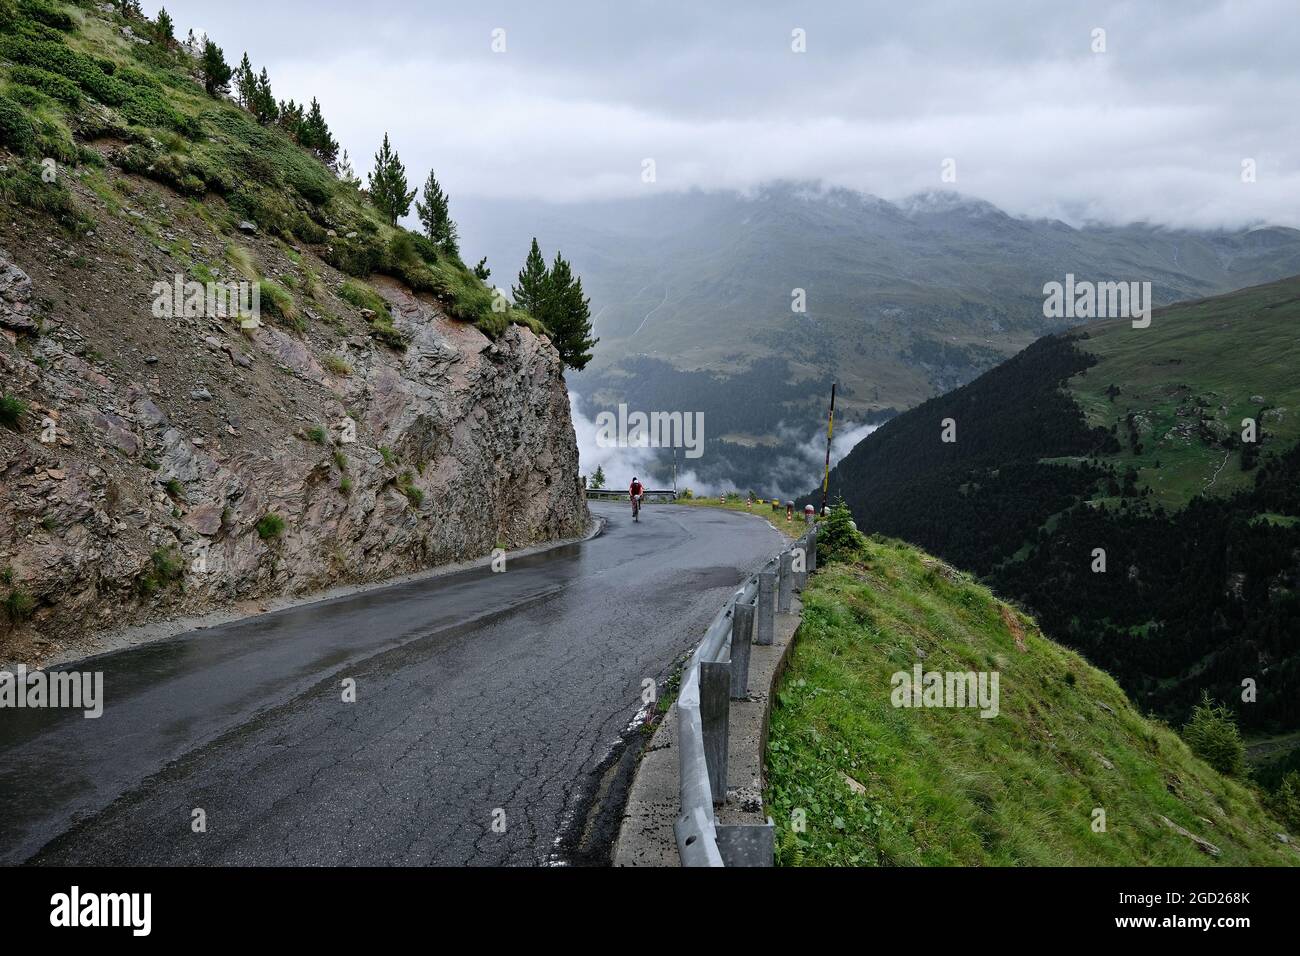 Passo di montagna Gaviapass, Passo di Gavia, nelle Alpi italiane. Passo di Gavia collega le province di Sondrio e Brescia. Foto Stock